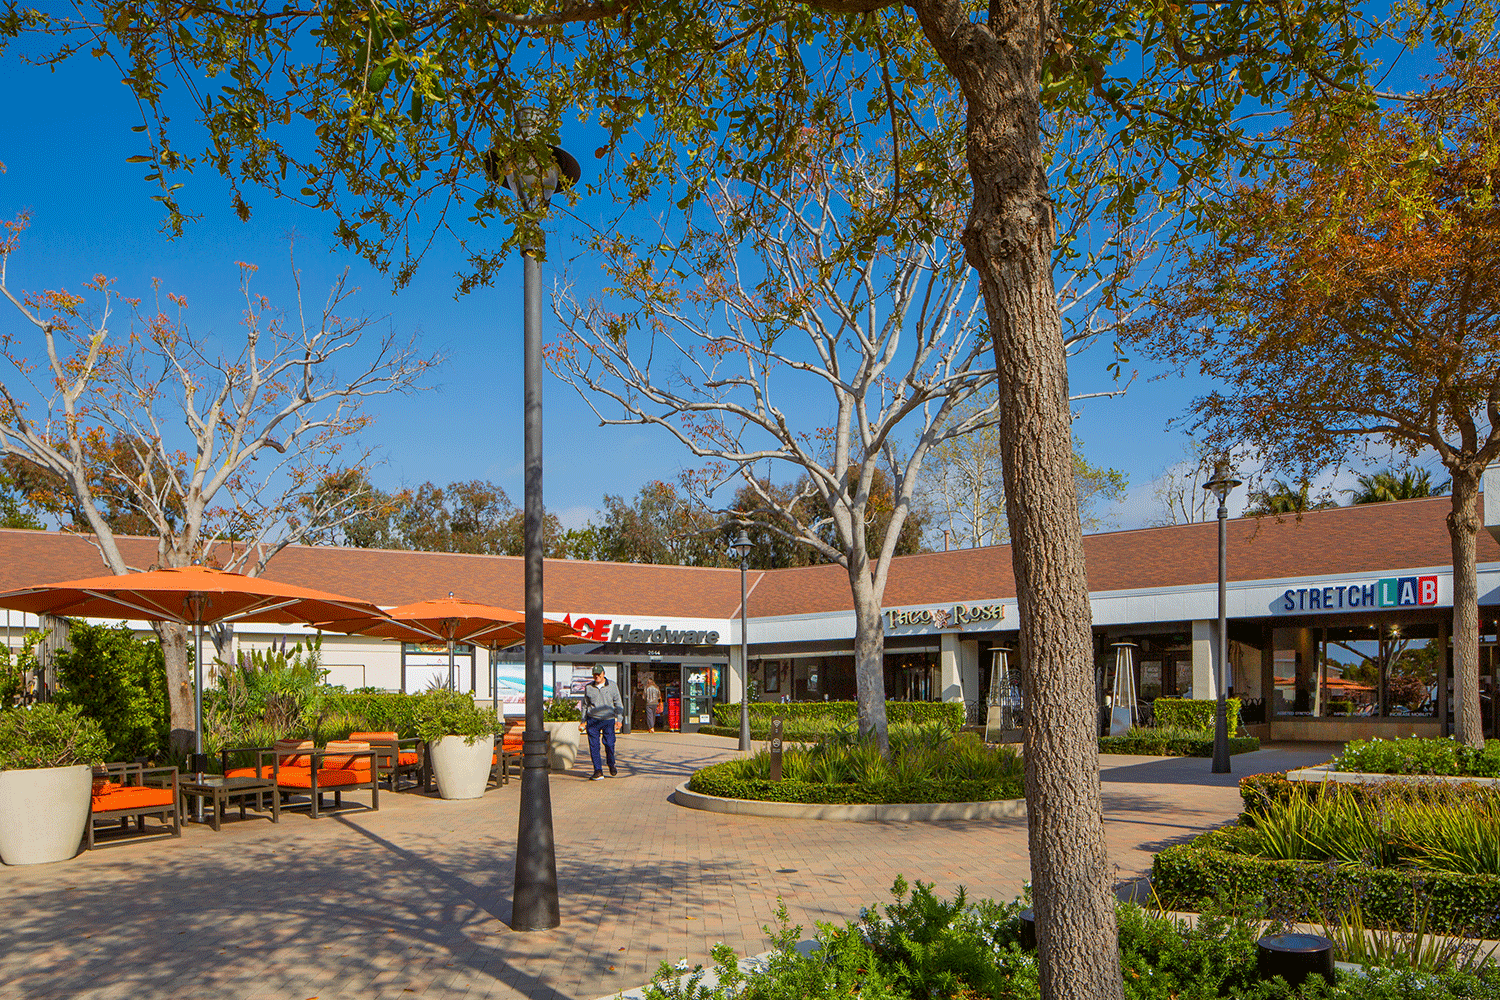  Exterior view of Newport Hills Shopping Center